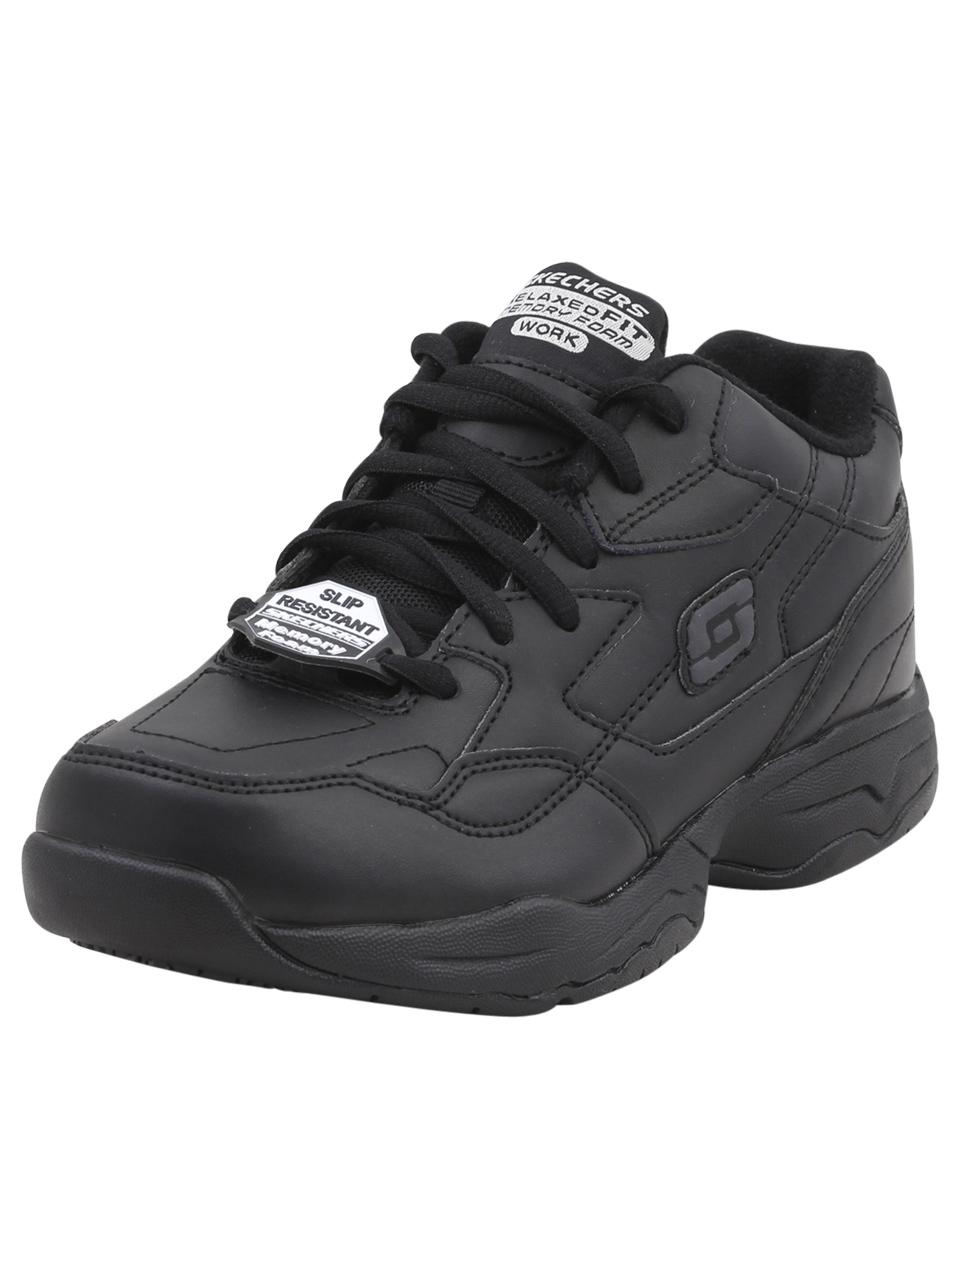 Skechers Work Women's Felton Albie Memory Foam Slip Resistant Sneakers Shoes - Black - 7 B(M) US